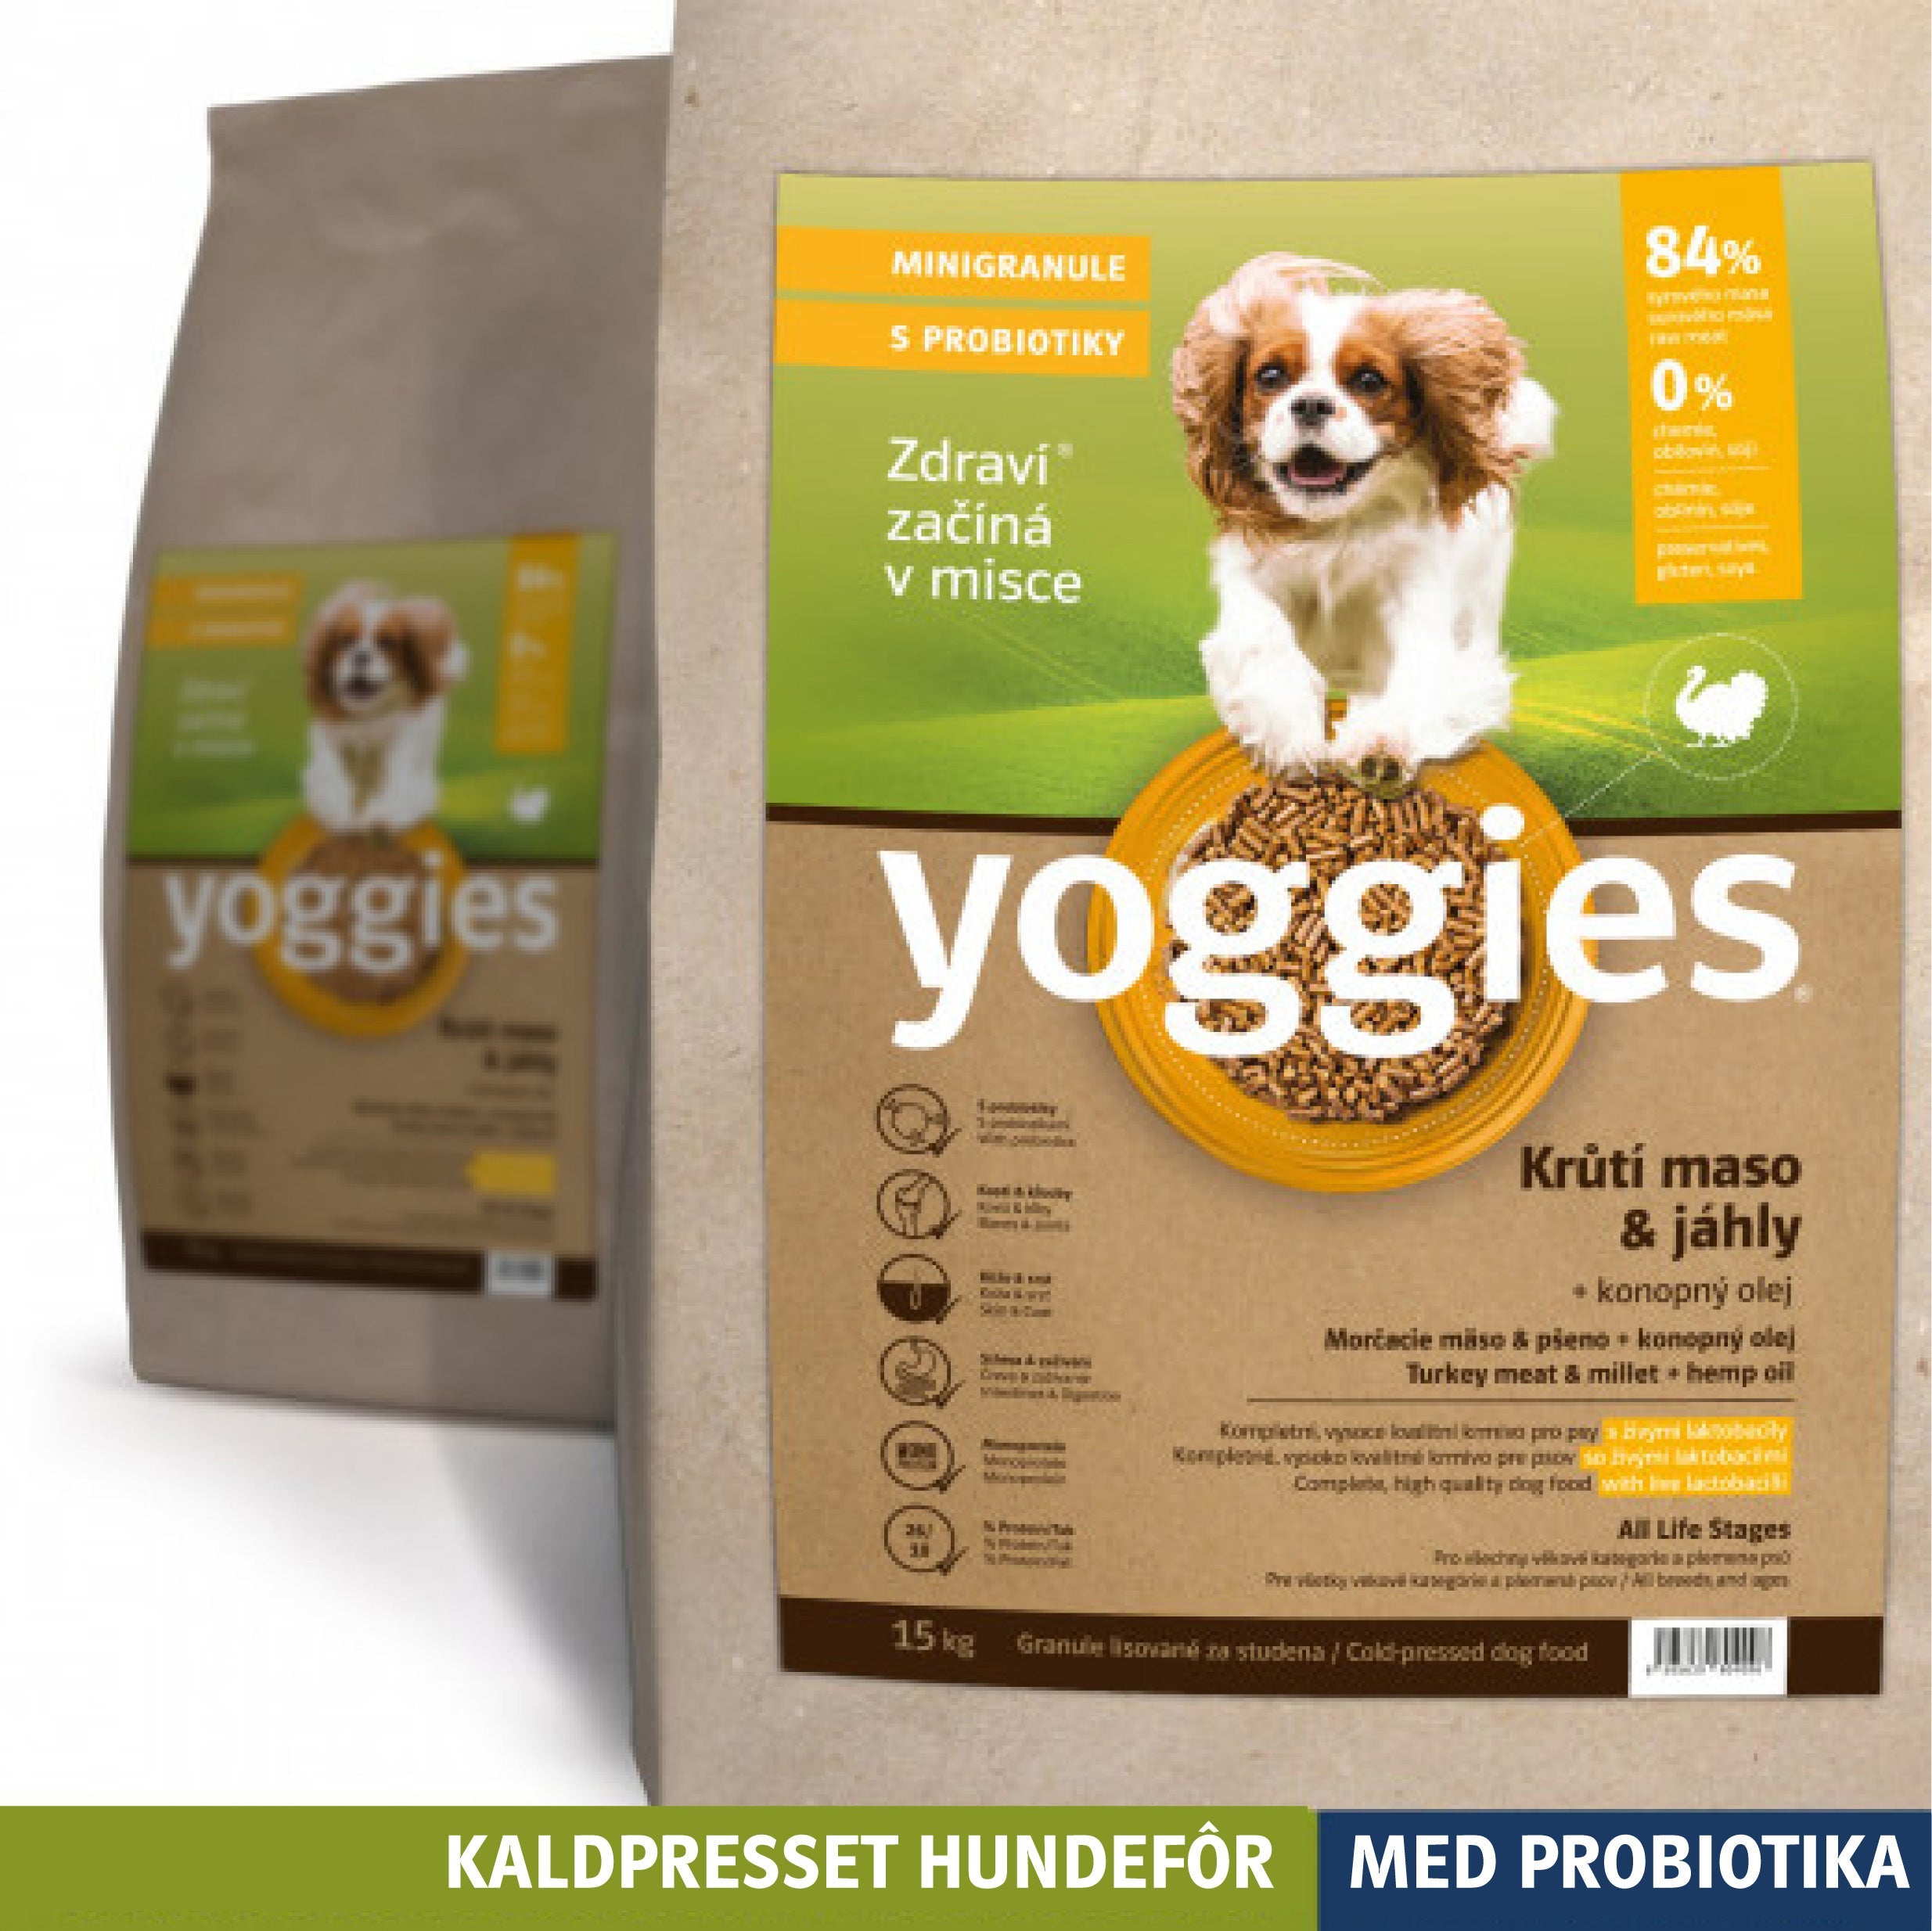 KALKUN & hirse med hampolje og probiotika MINI - kaldpresset hundefôr YOGGIES